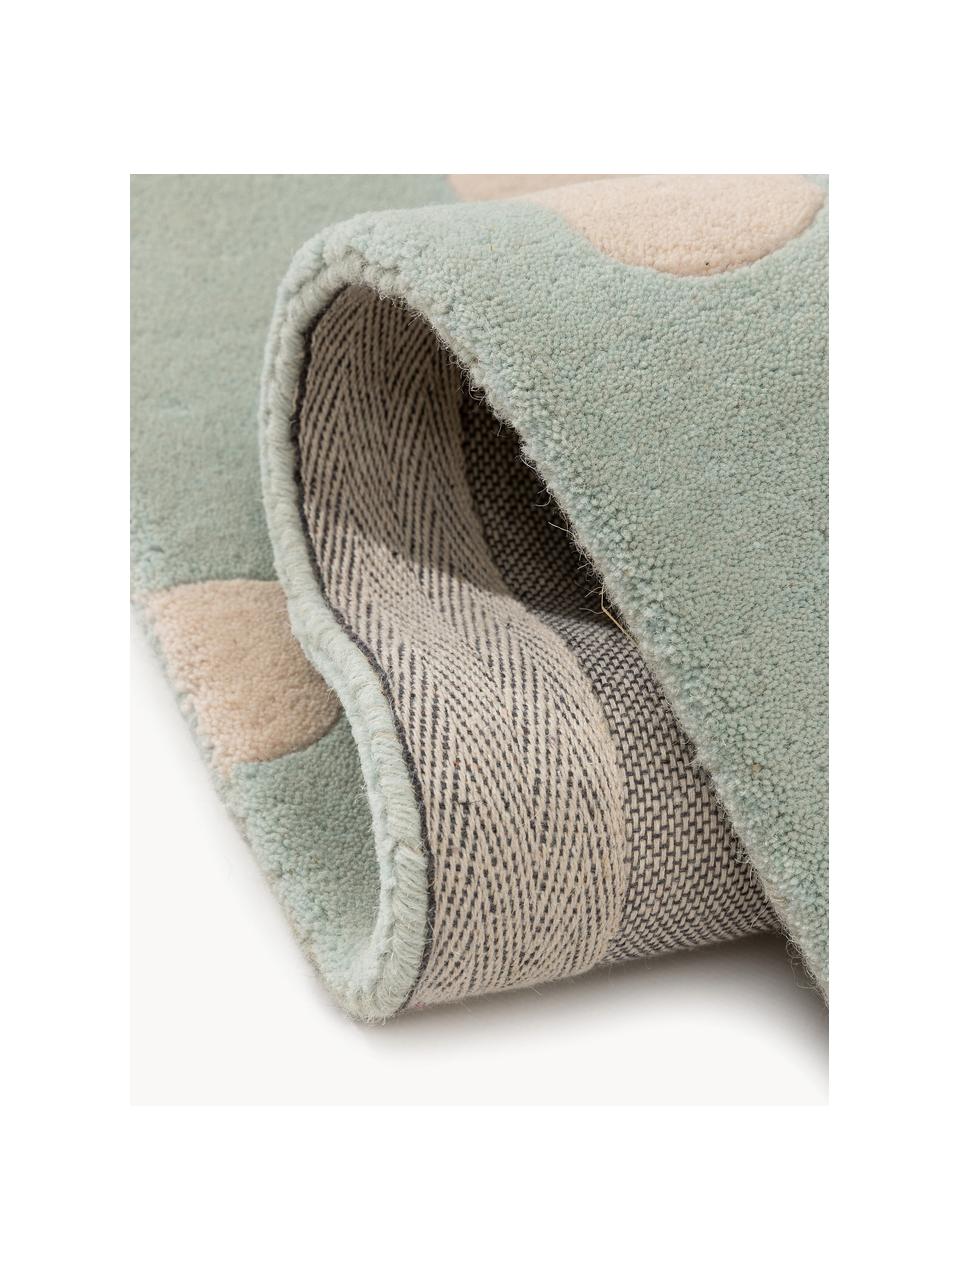 Alfombra infantil artesanal de lana Savannah, 100% lana

Las alfombras de lana se pueden aflojar durante las primeras semanas de uso, la pelusa se reduce con el uso diario., Verde salvia, beige claro, An 120 x L 170 cm (Tamaño S)